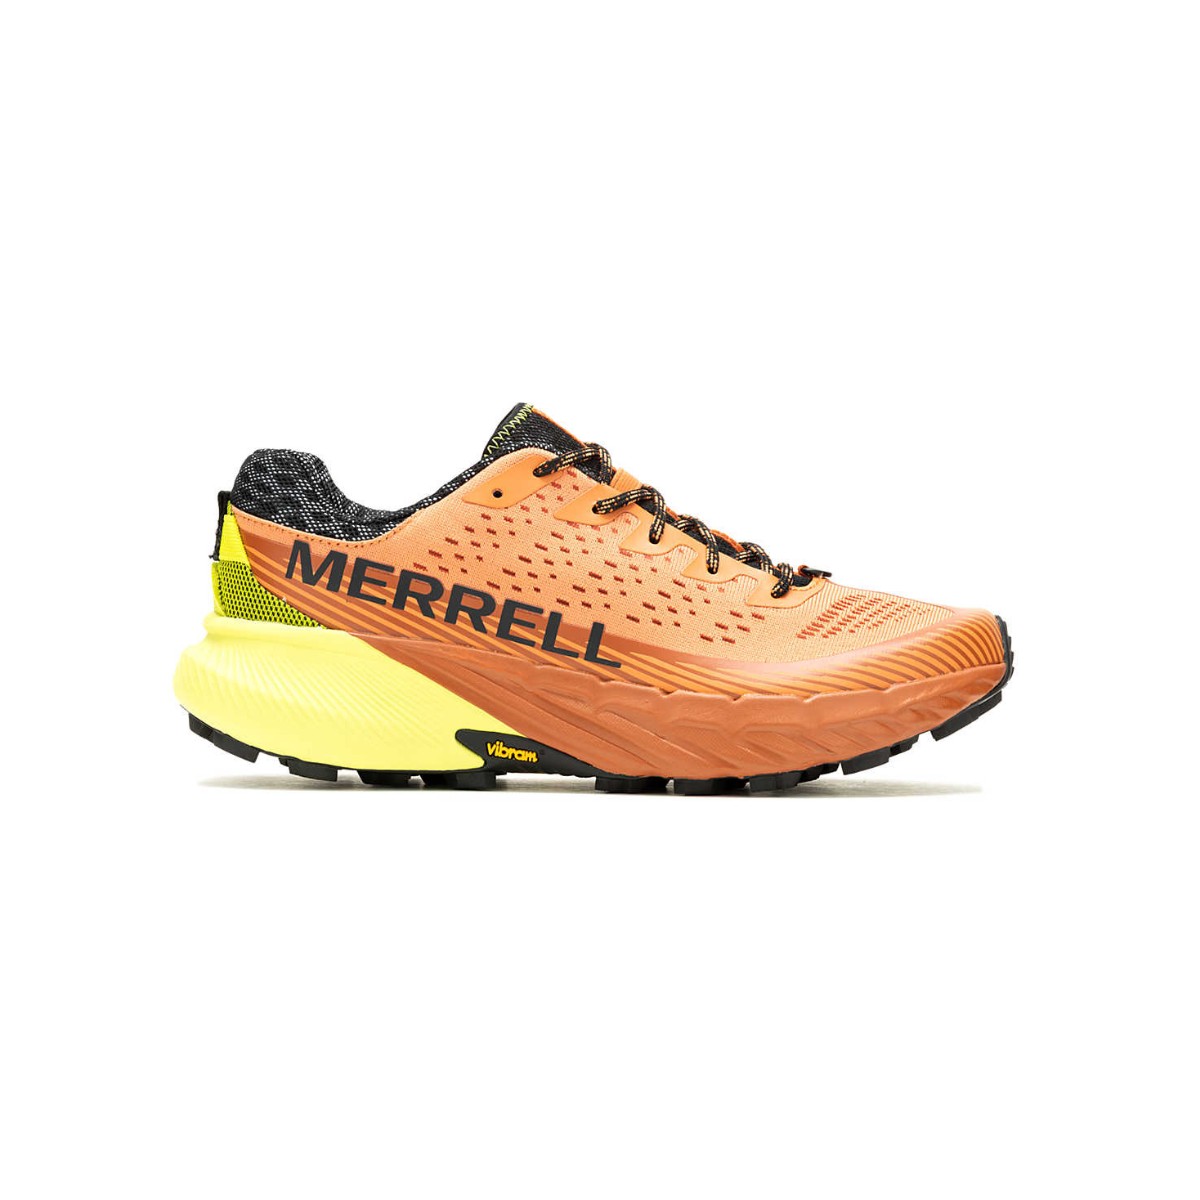 Schuhe Laufschuhe günstig Kaufen-Merrell Agility Peak 5 Orange Gelb SS24 Laufschuhe, Größe 41 - EUR. Merrell Agility Peak 5 Orange Gelb SS24 Laufschuhe, Größe 41 - EUR <![CDATA[Merrell Agility Peak 5 Schuhe
 Entdecken Sie neue Trails mit den Merrell Agility Peak 5-Sch